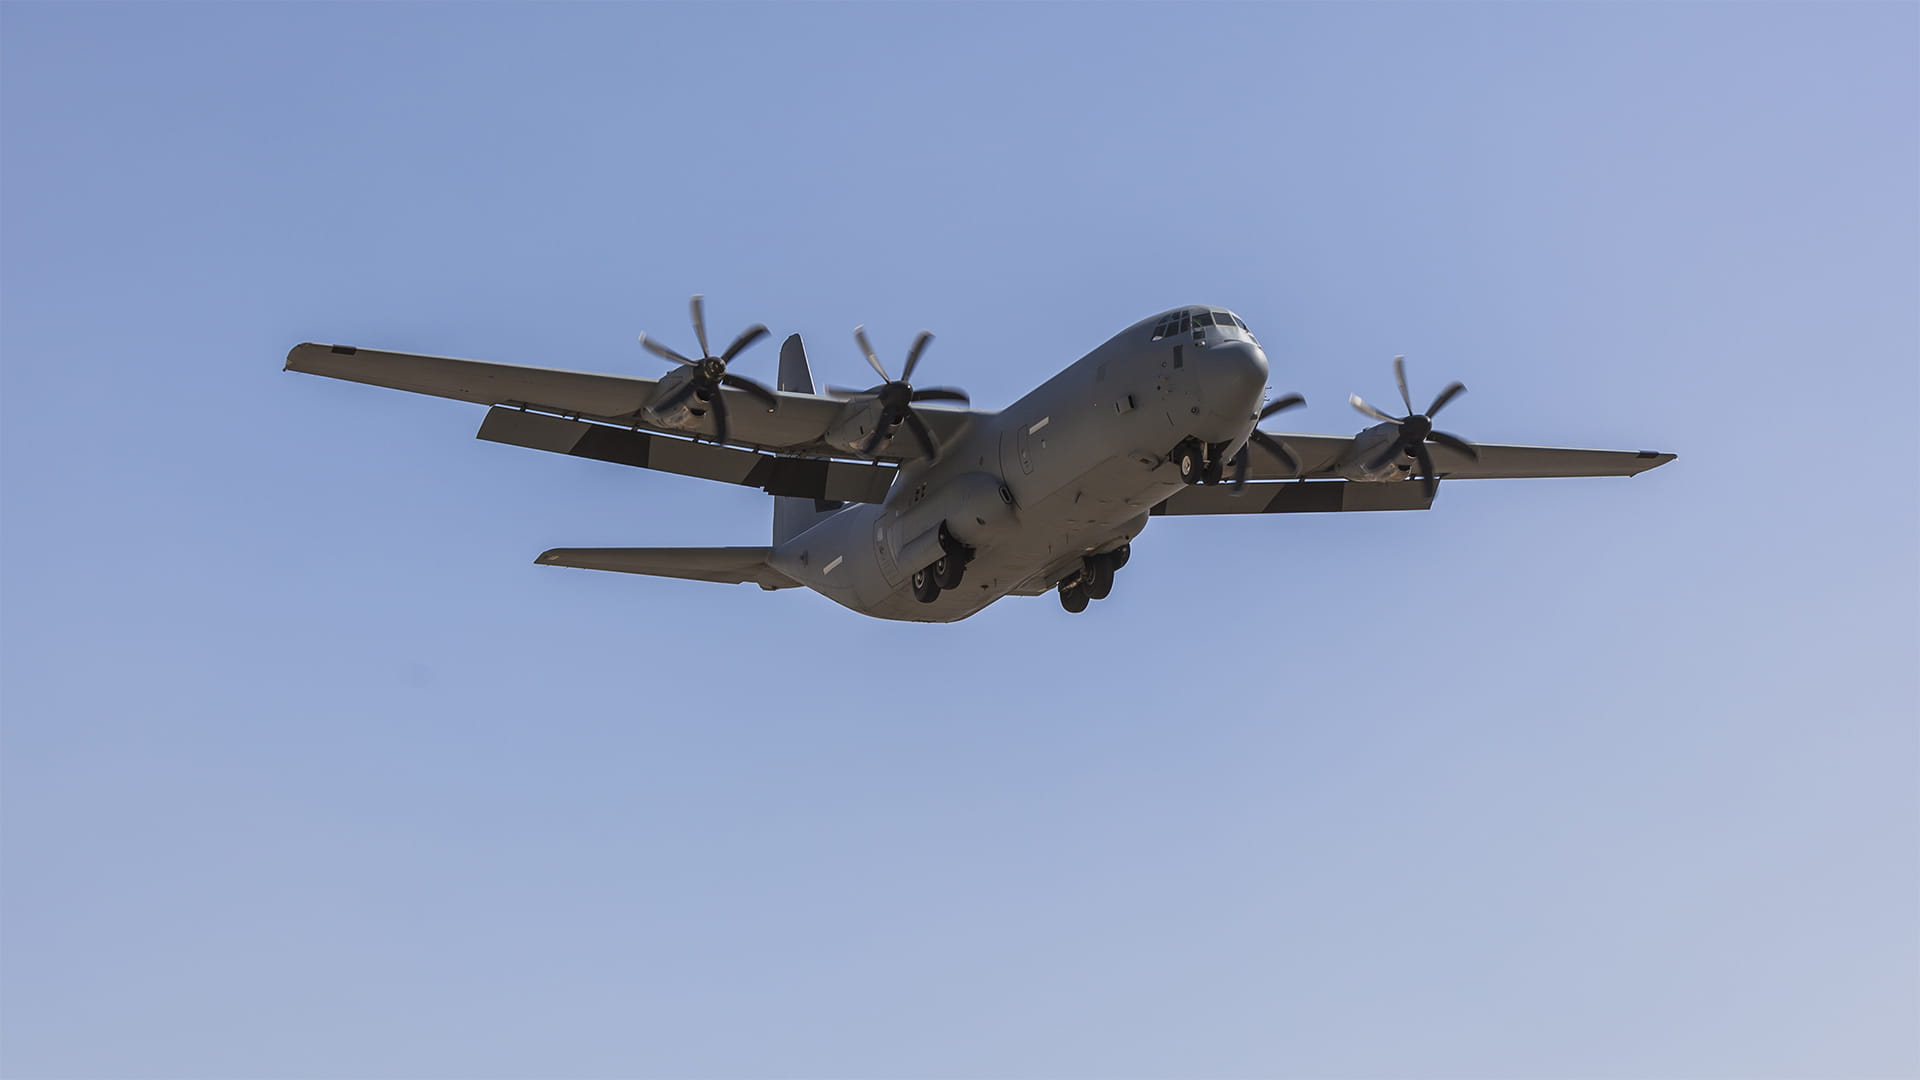 Military C-130 in flight